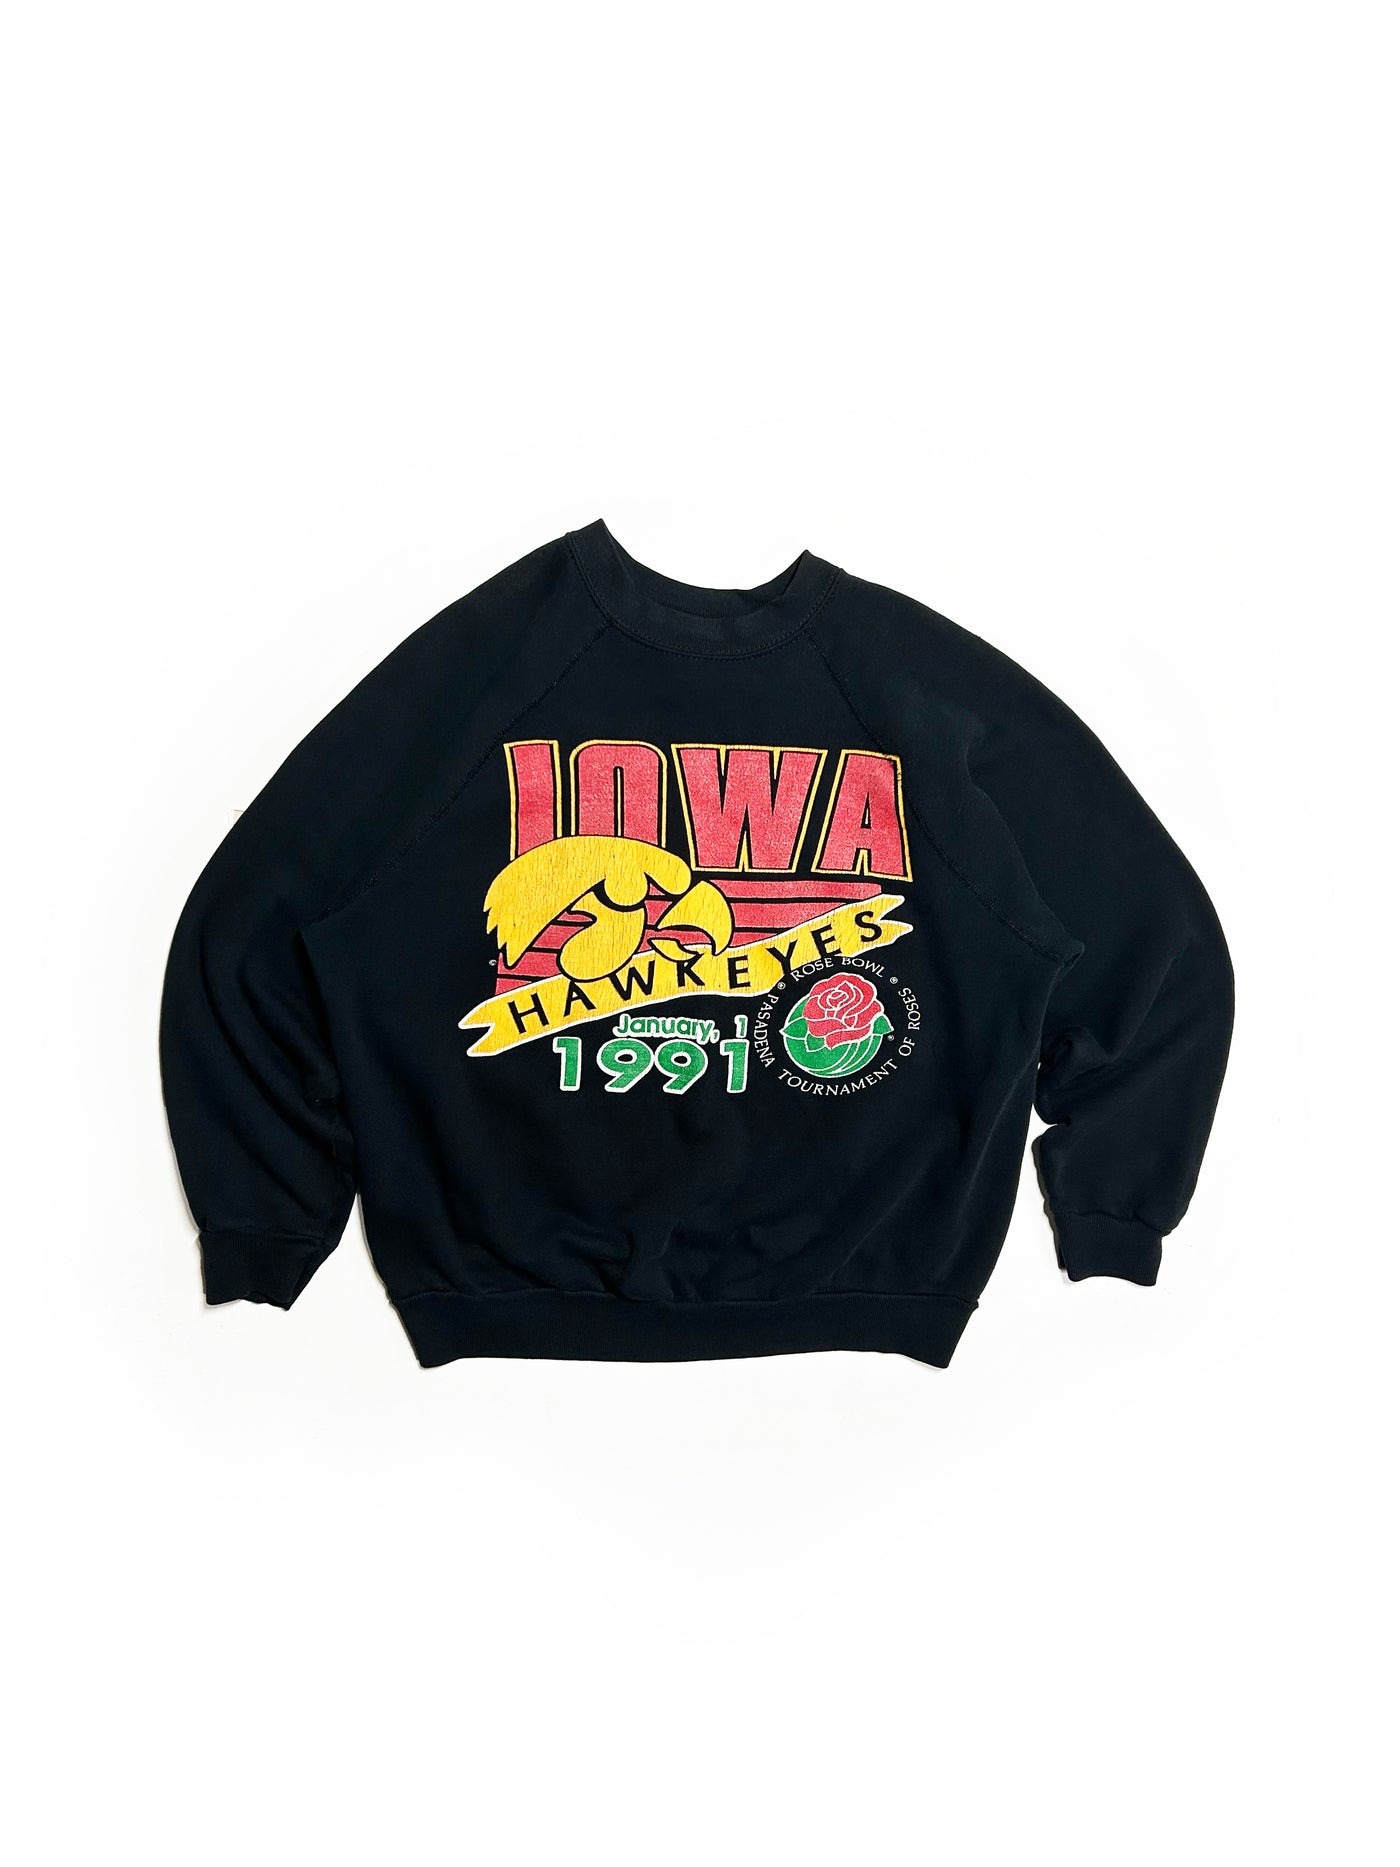 Vintage 1991 Iowa Hawkeyes Rosebowl Crewneck